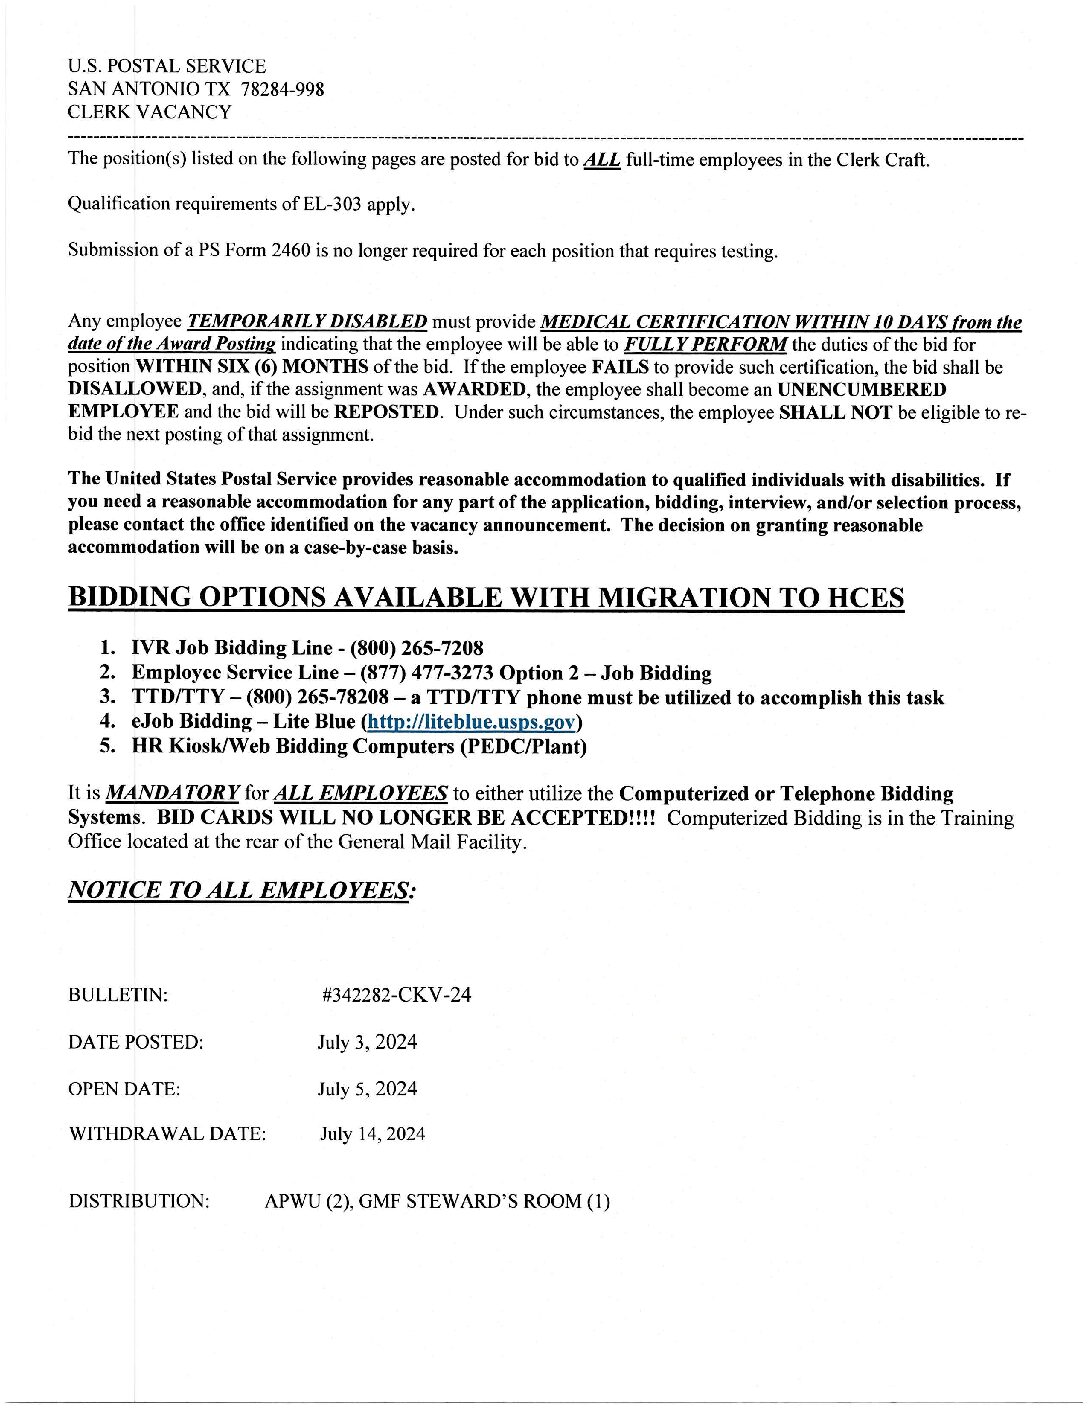 E-Flash Clerk Job Vacancy Bulletin 7/5/2024 - 